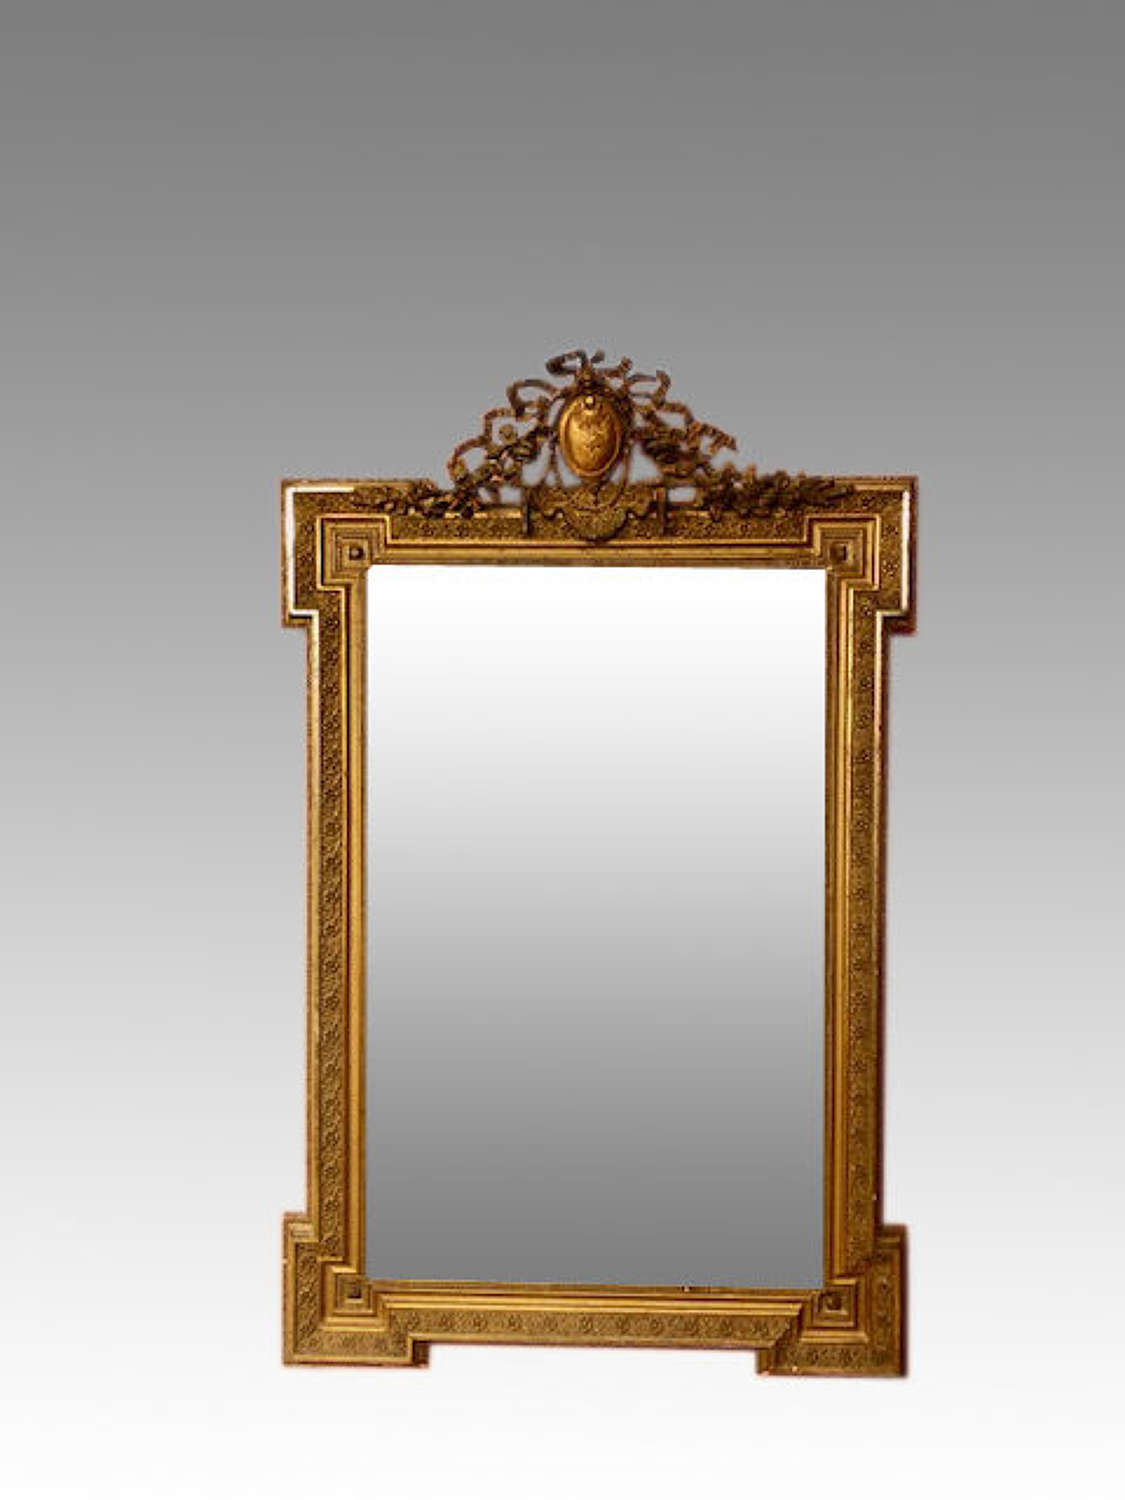 19th century gilt gesso wall mirror.